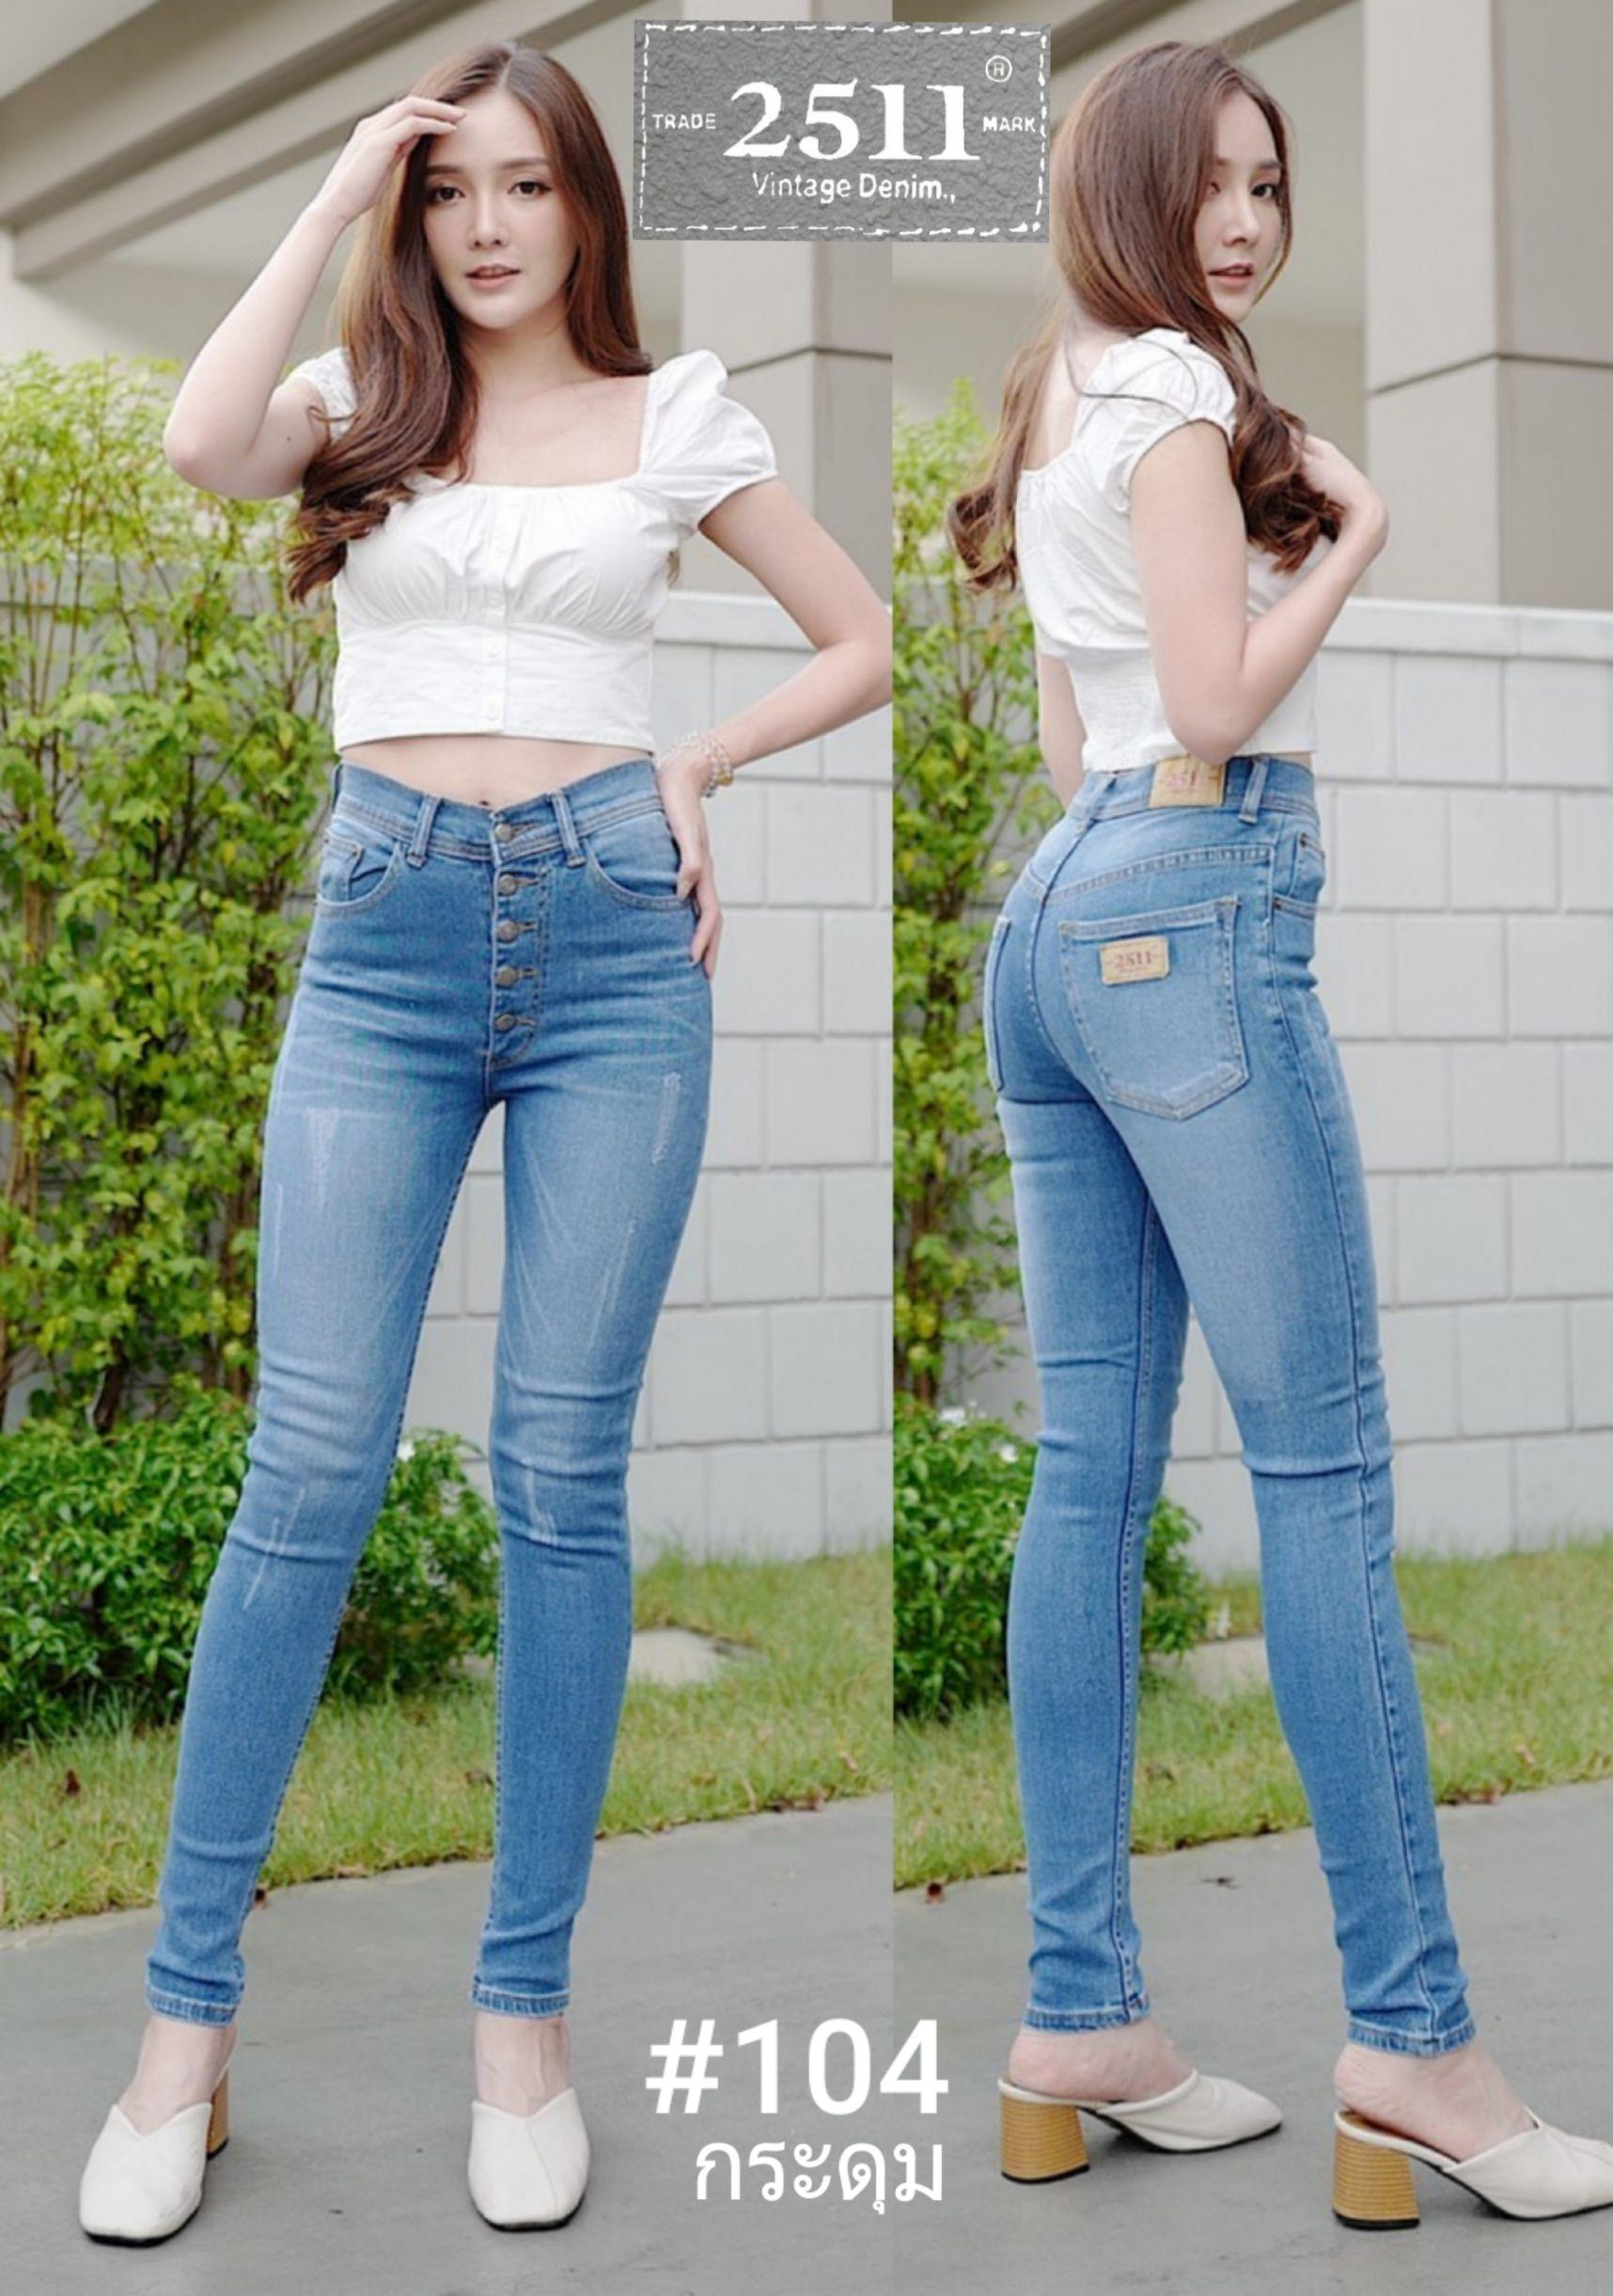 [[ถูกที่สุด]]2511 Vintage Denim Jeans by GREAT กางเกงยีนส์ ผญ กางเกงแฟชั่นผู้หญิง กางเกงยีนส์ยืด เข้ารูป ทรงสวย ขาเรียว  เข้ารูปสุดๆใส่แล้วสวยจริงๆค่ะ